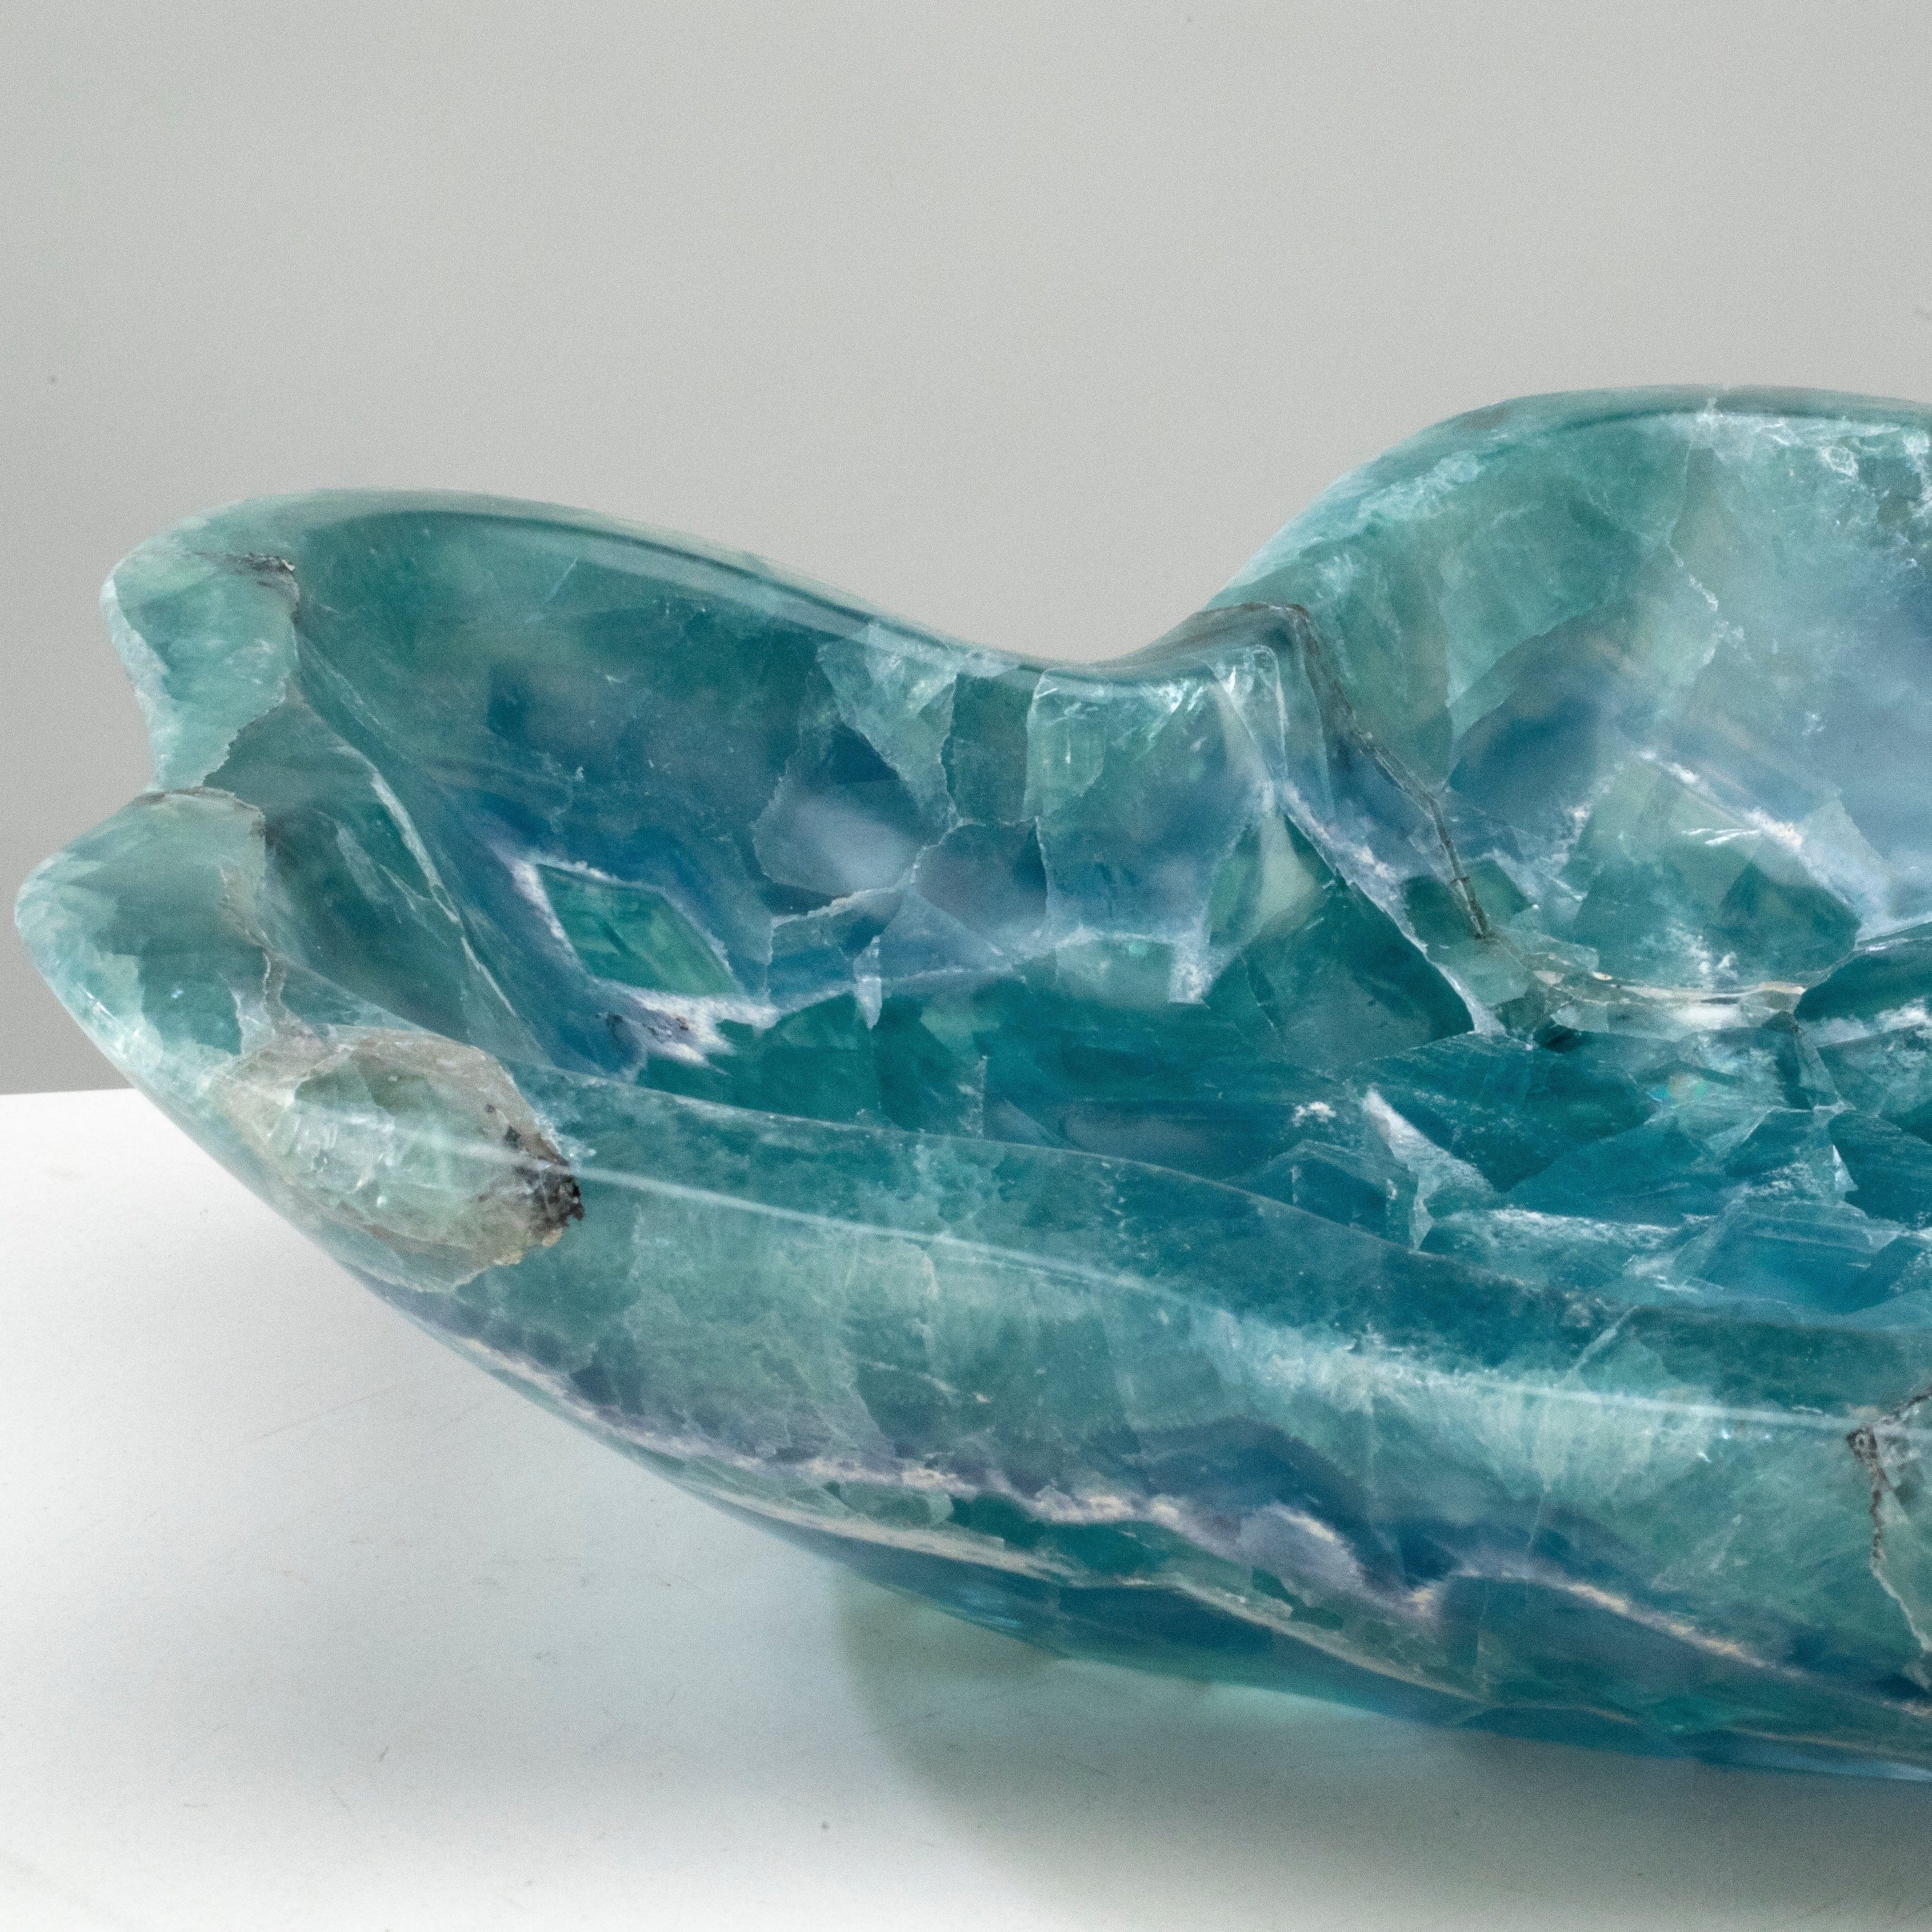 KALIFANO Gemstone Bowls Natural Blue / Green Fluorite Bowl 13" BFL7200.004